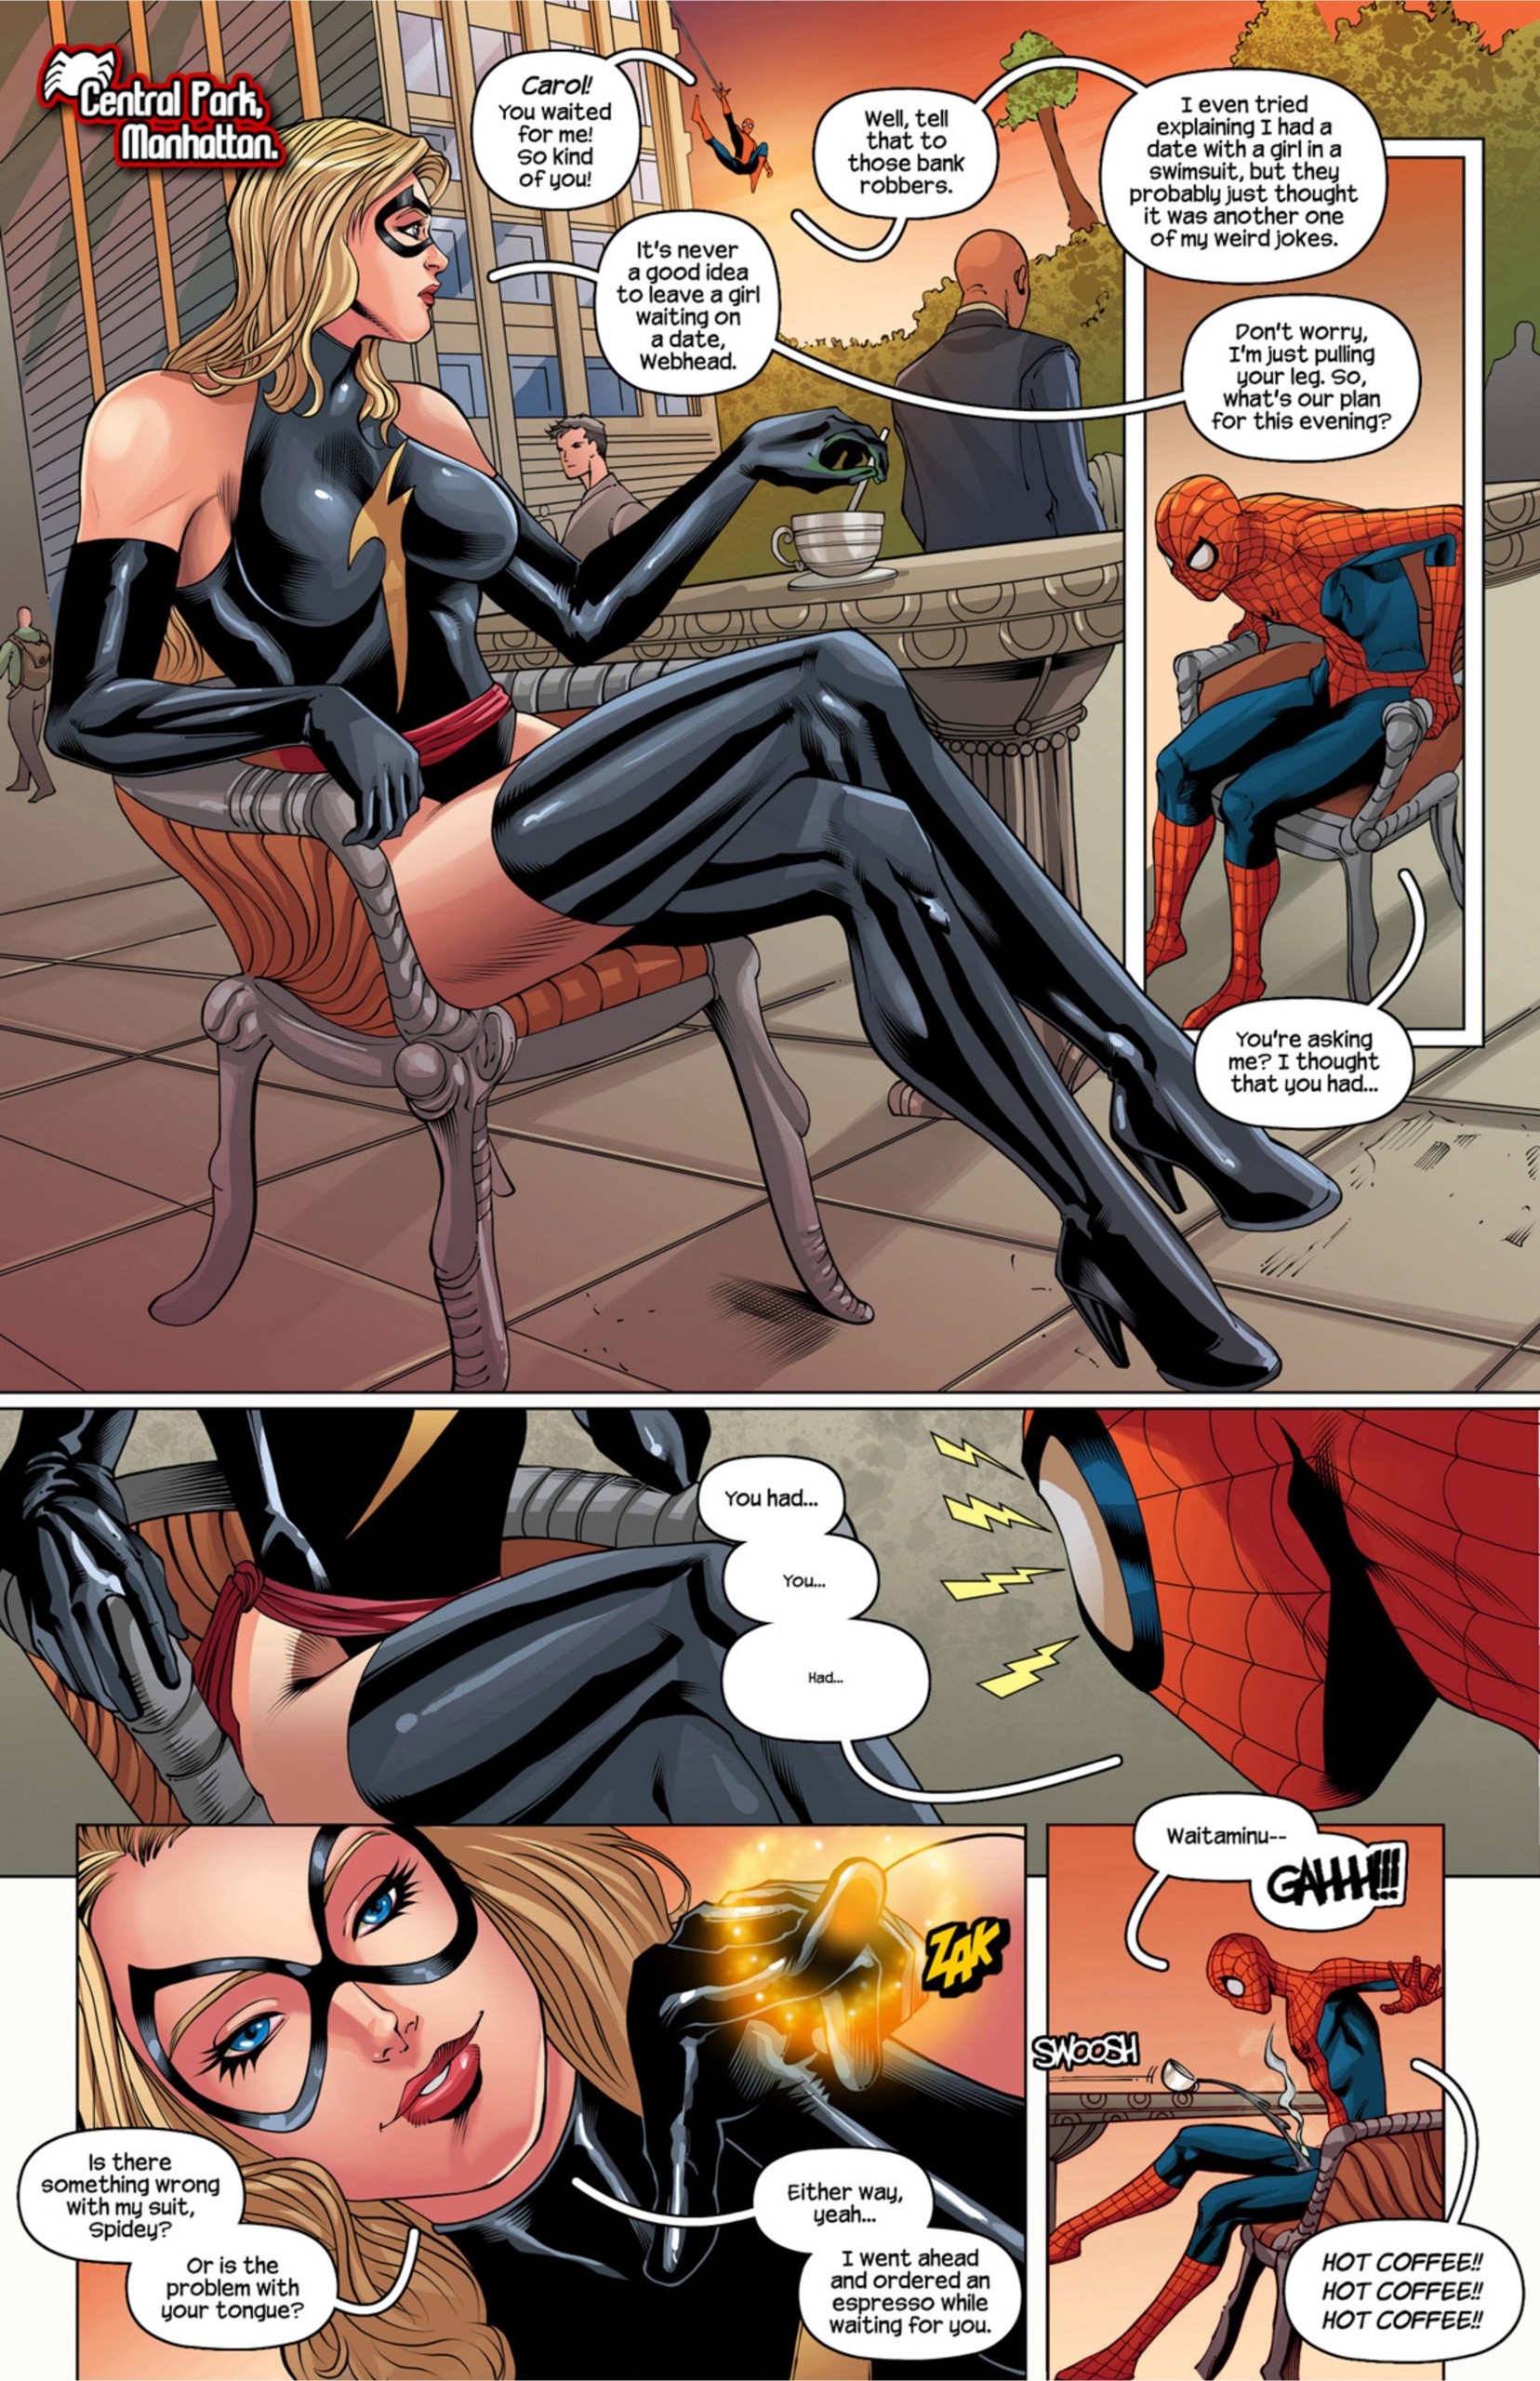 Porno spiderman